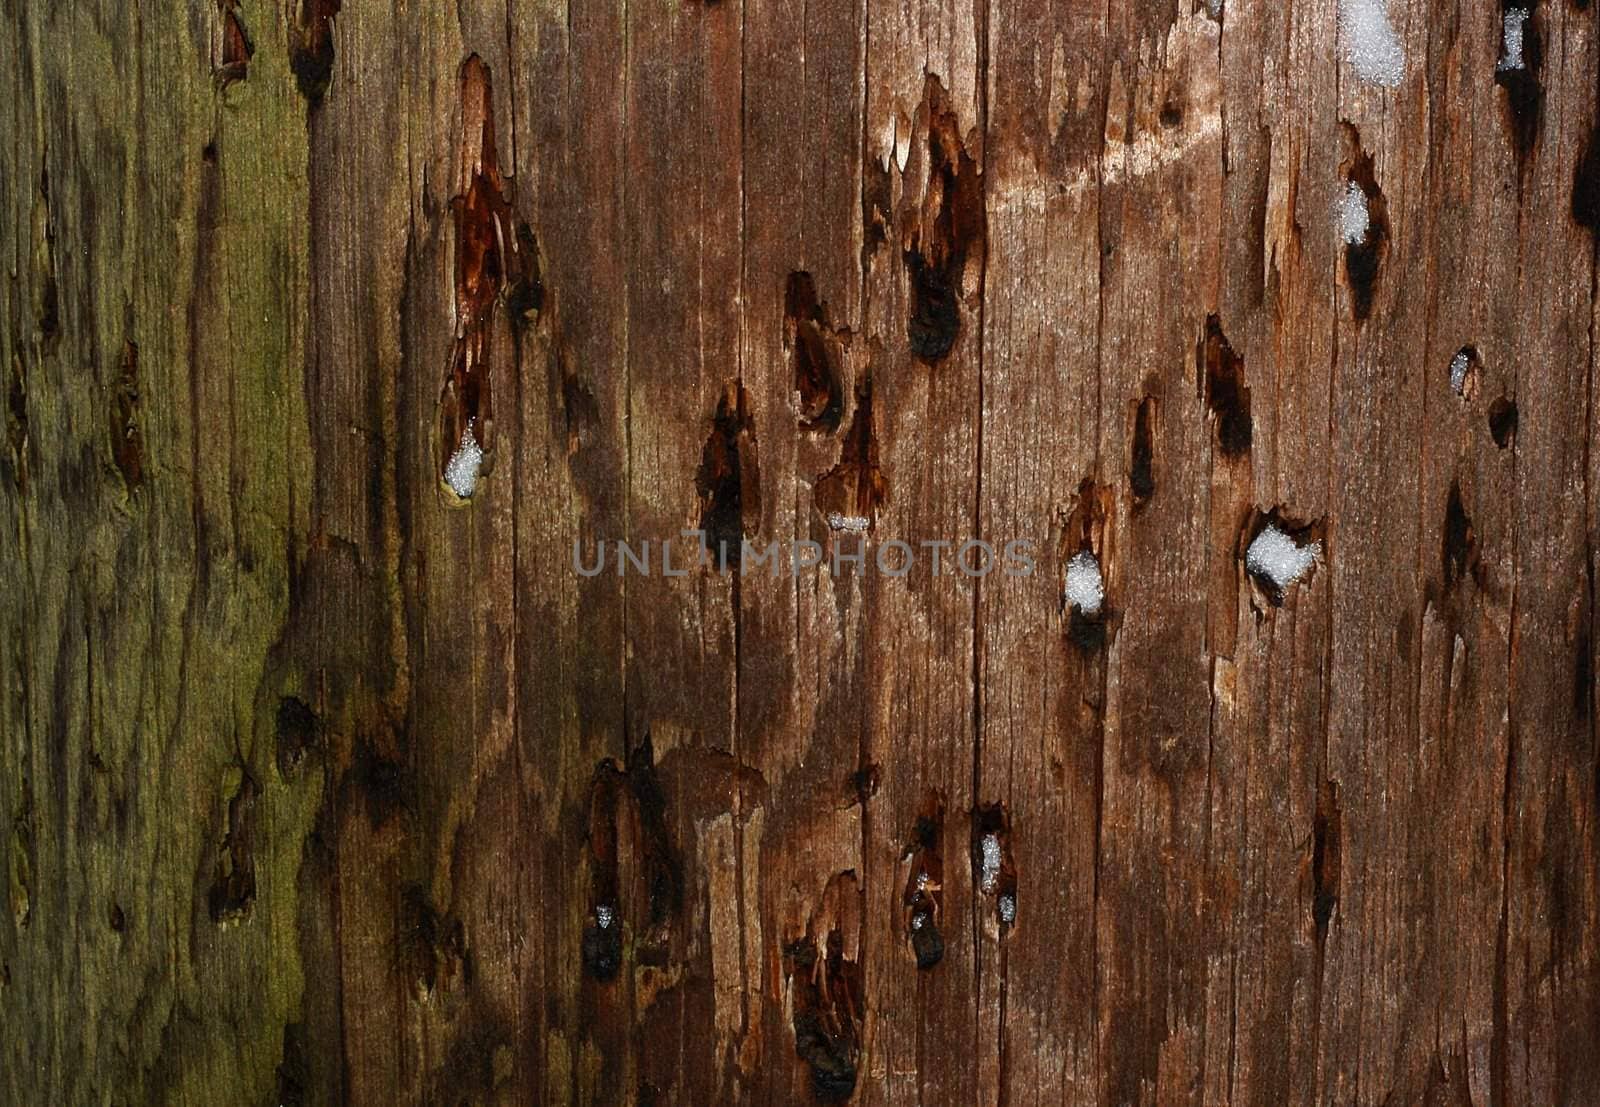 Grunge wooden background texture by sundaune